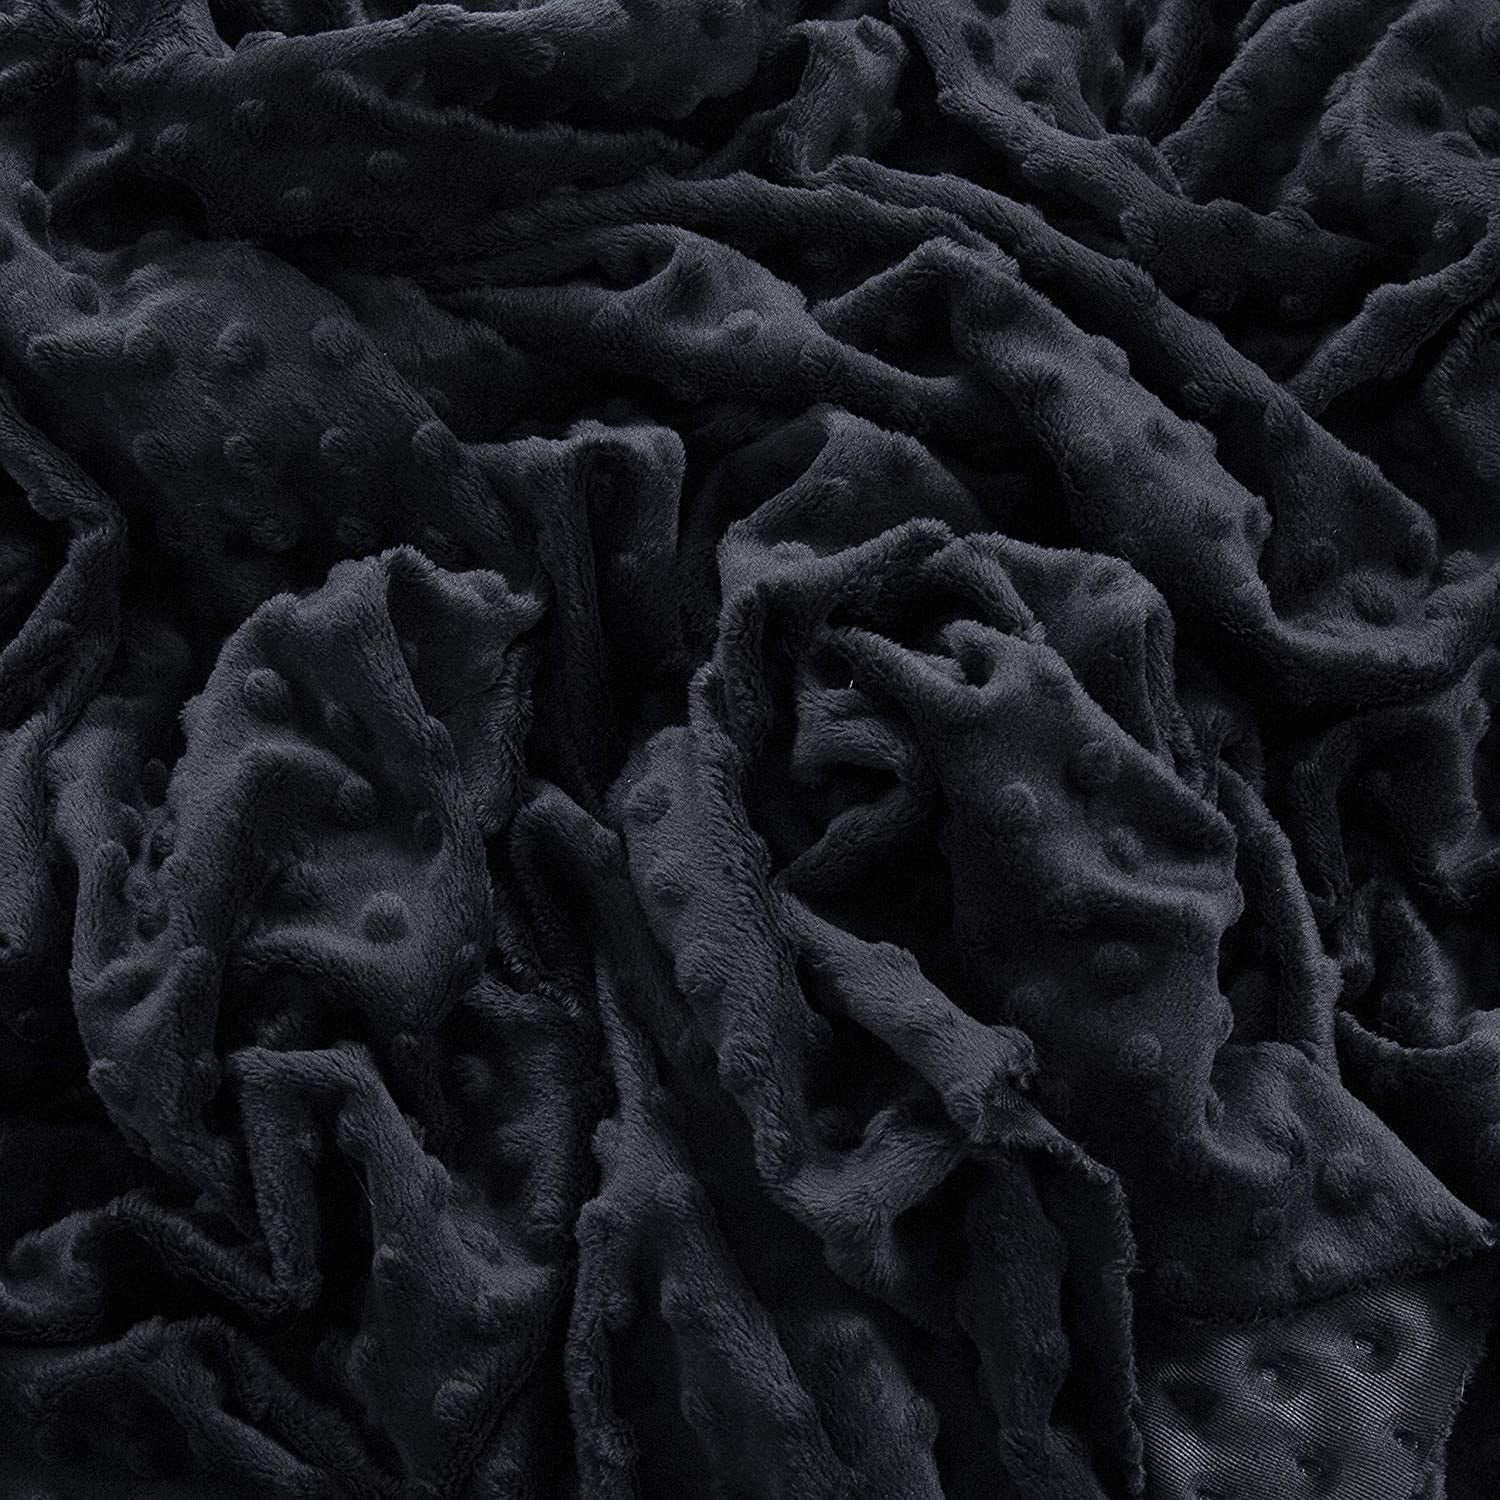 FabricLA Plain Navy Minky Fabric - Soft and Minky Fabric - 58/60